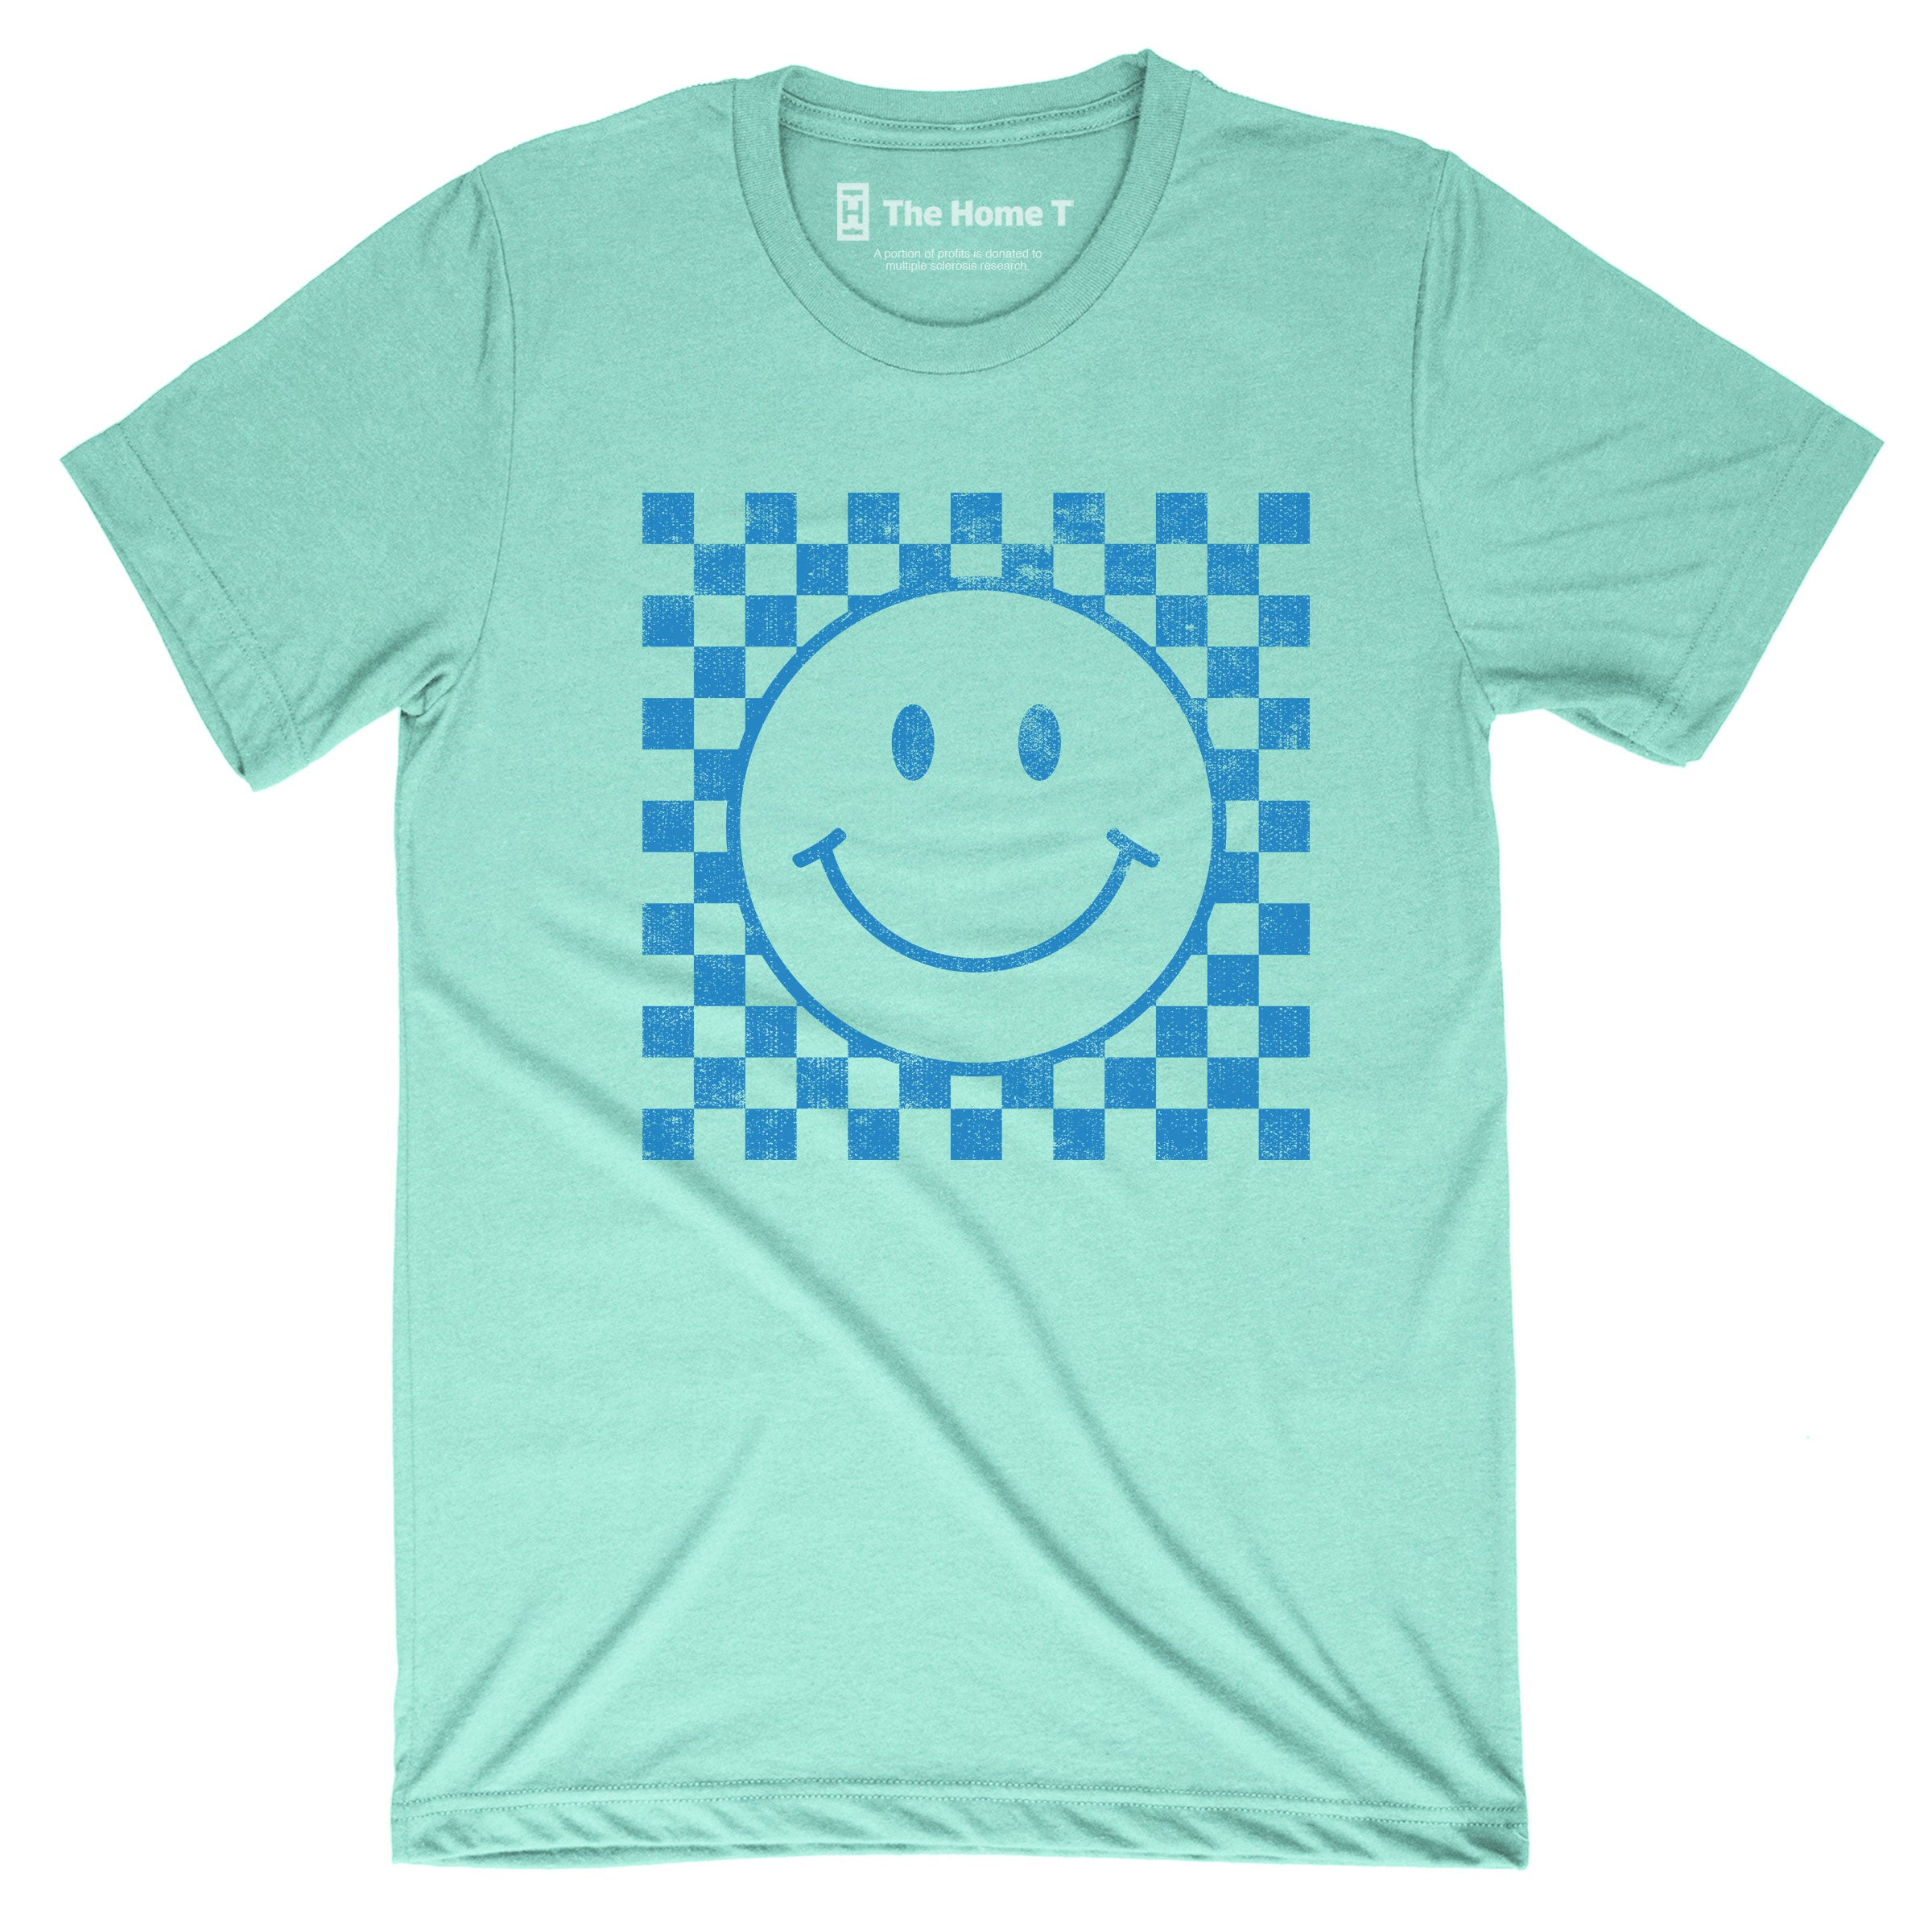 Checkered Smiley